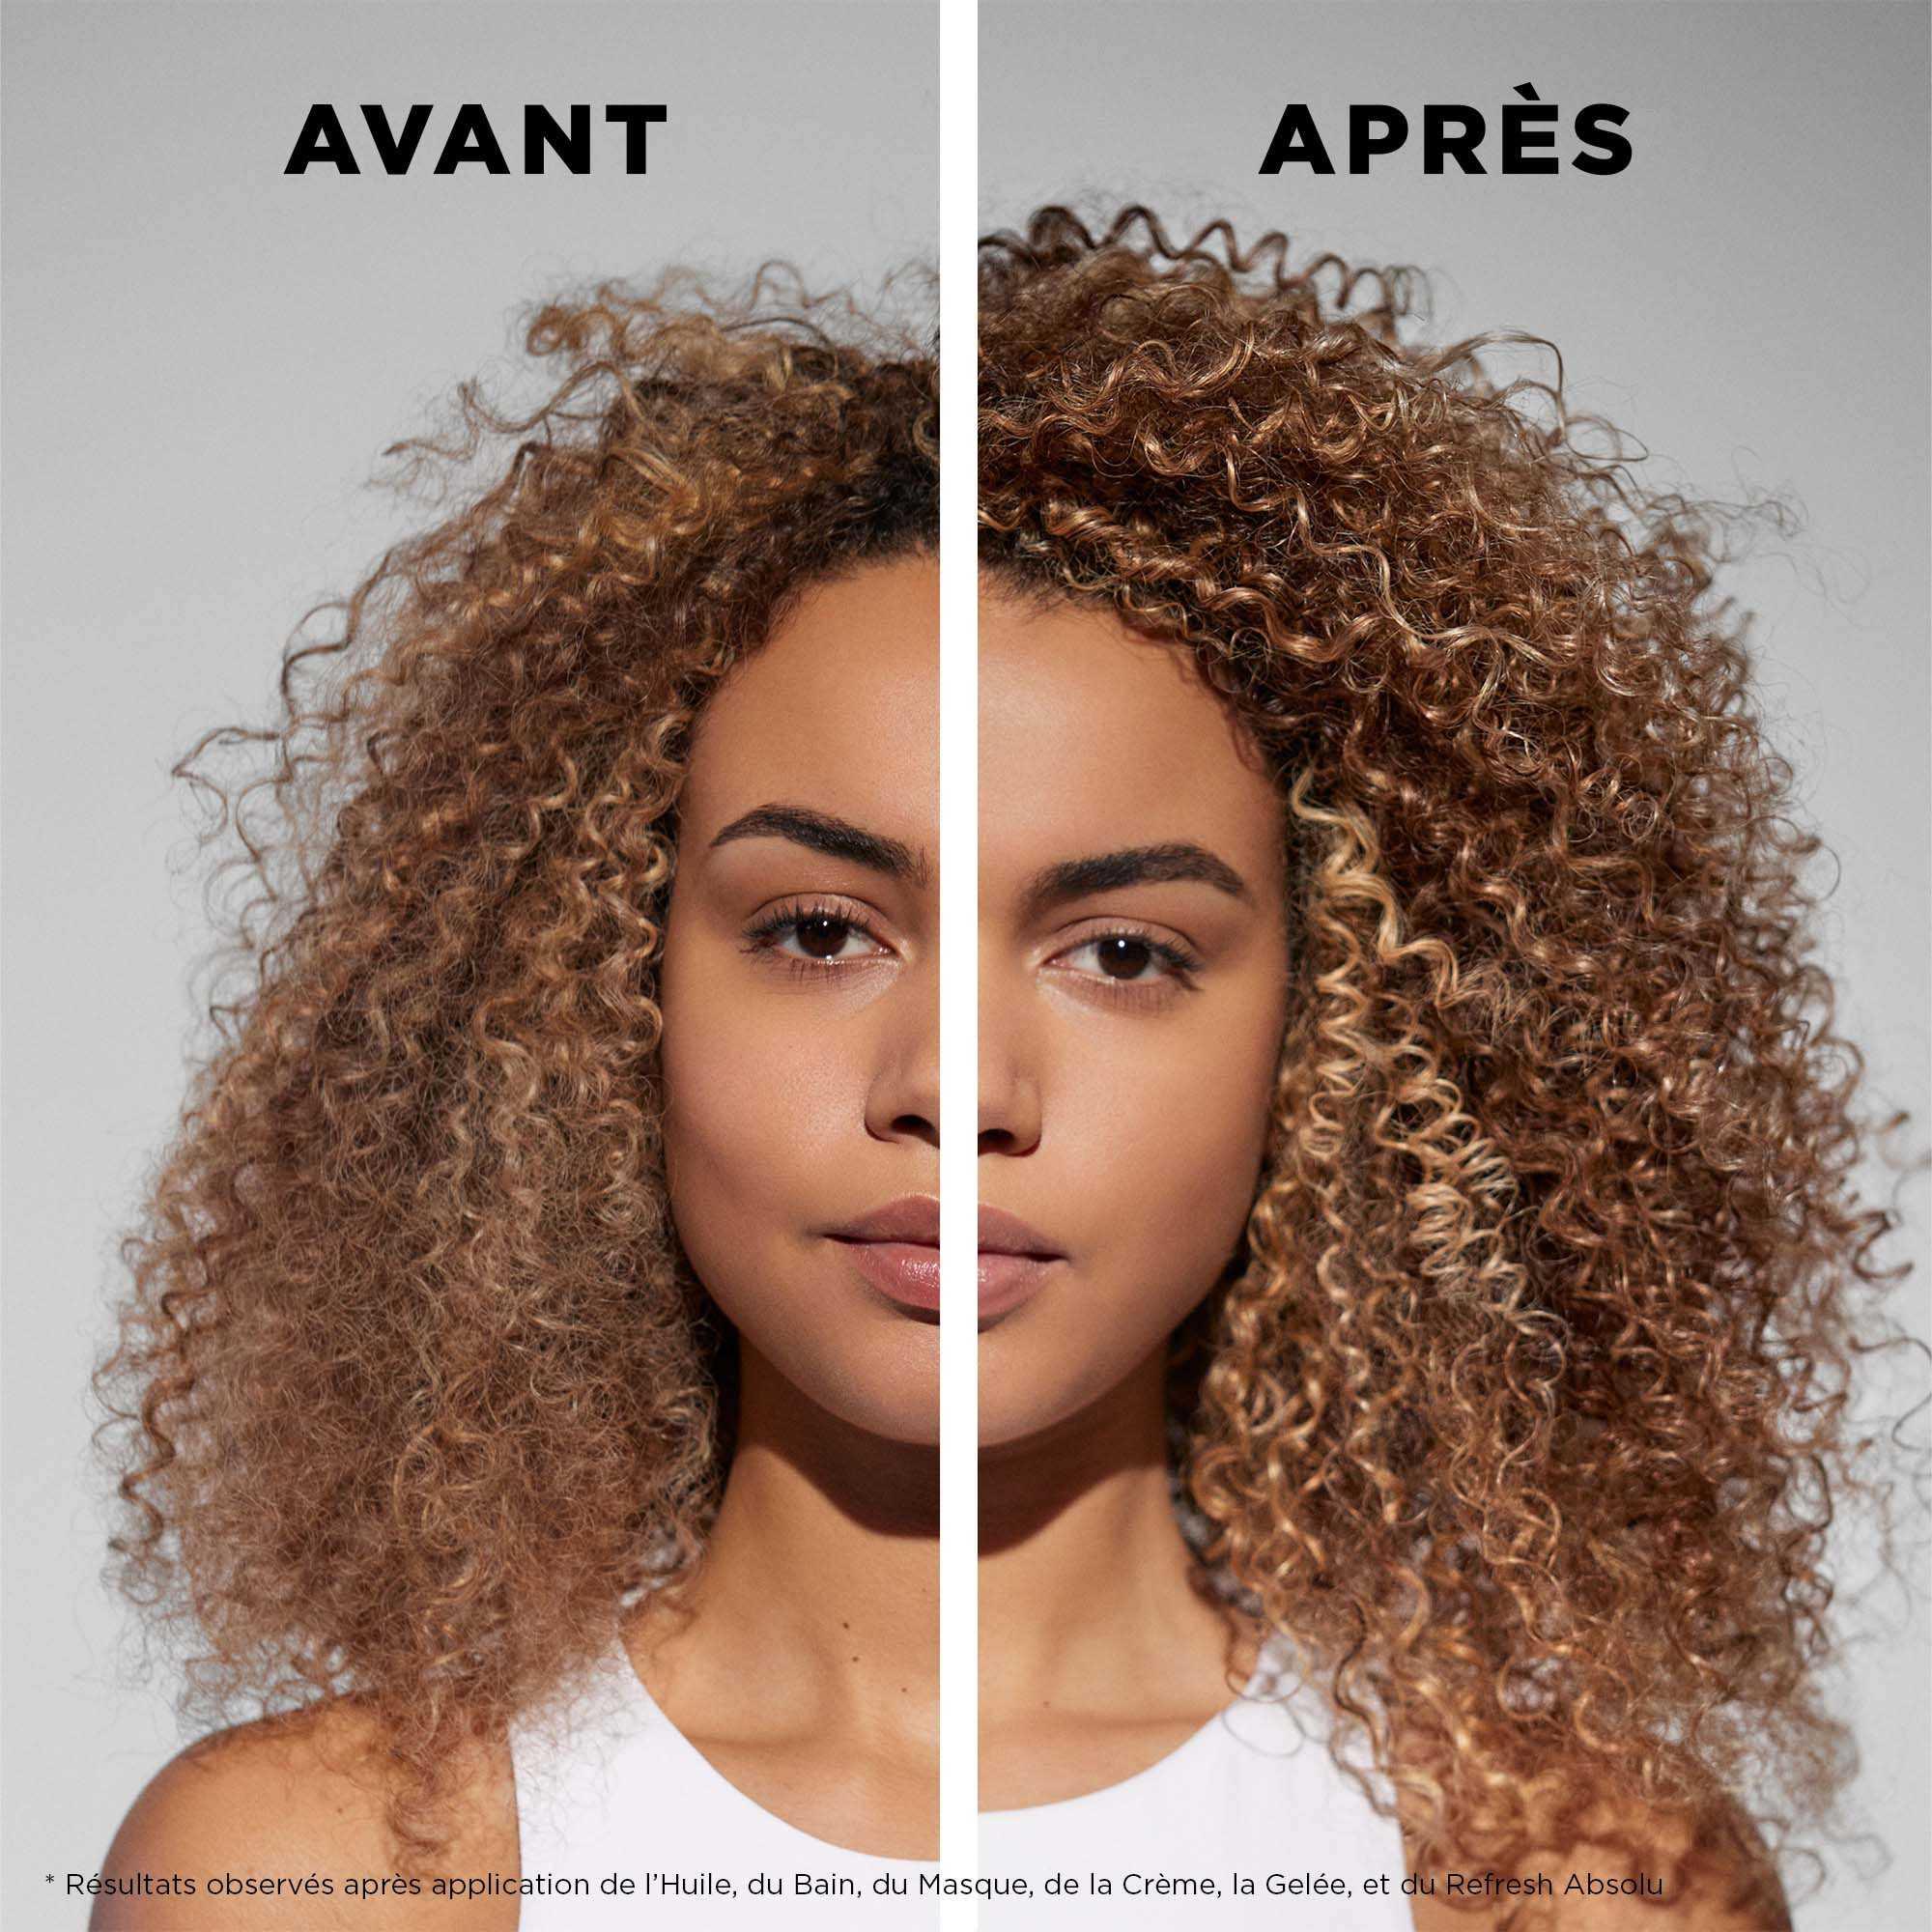 Coffret Printemps Curl Manifesto Duo Cheveux Bouclés